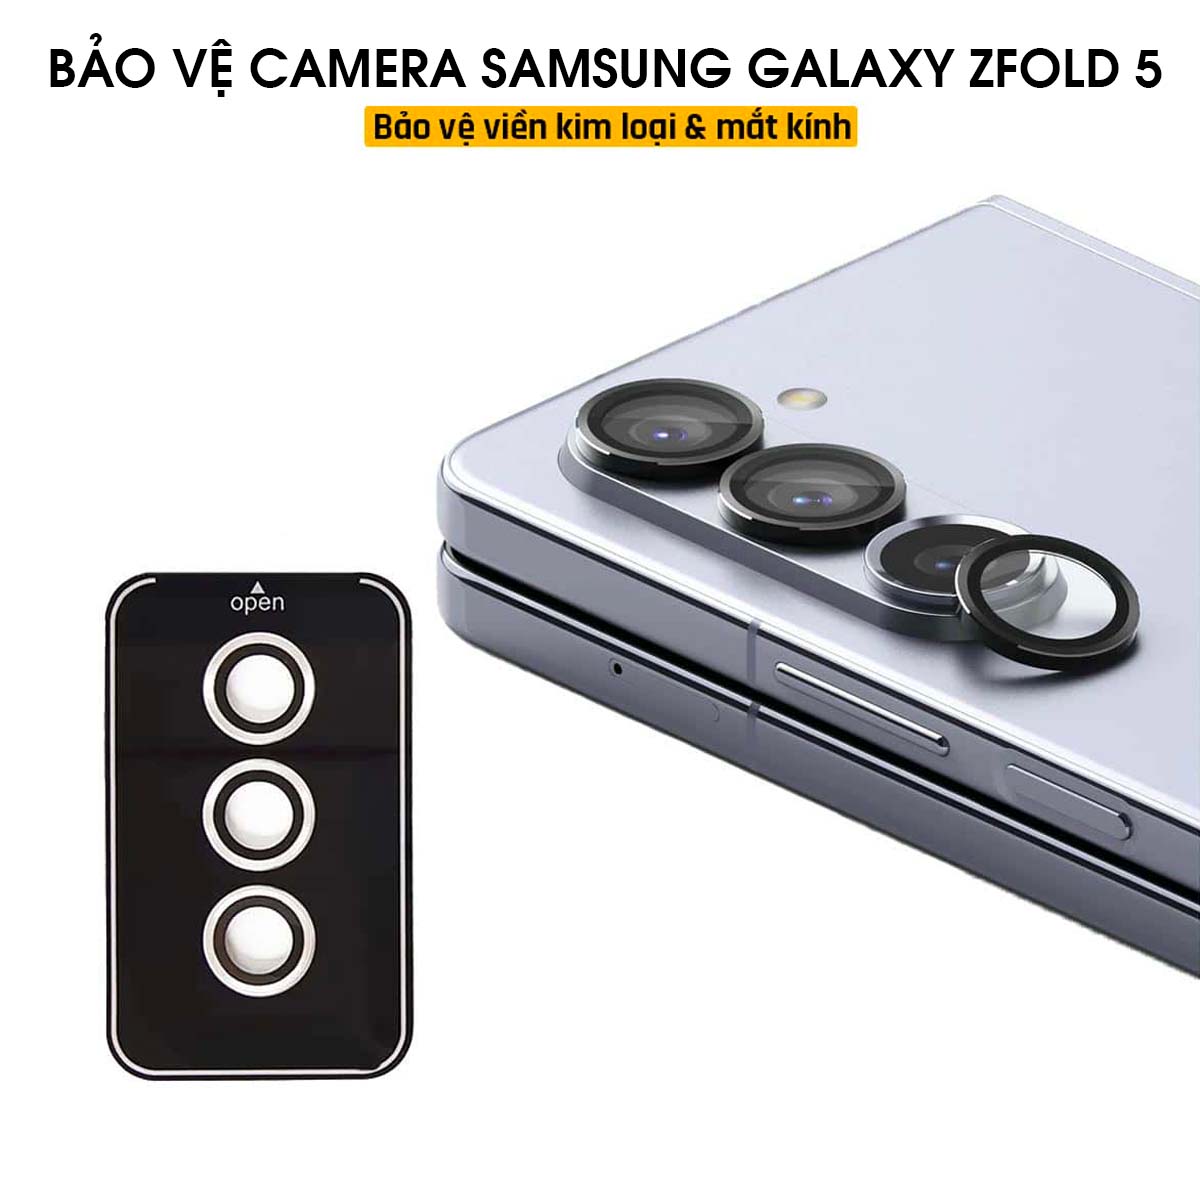 Bộ mắt lens bảo vệ camera Samsung Galaxy Z Fold 5